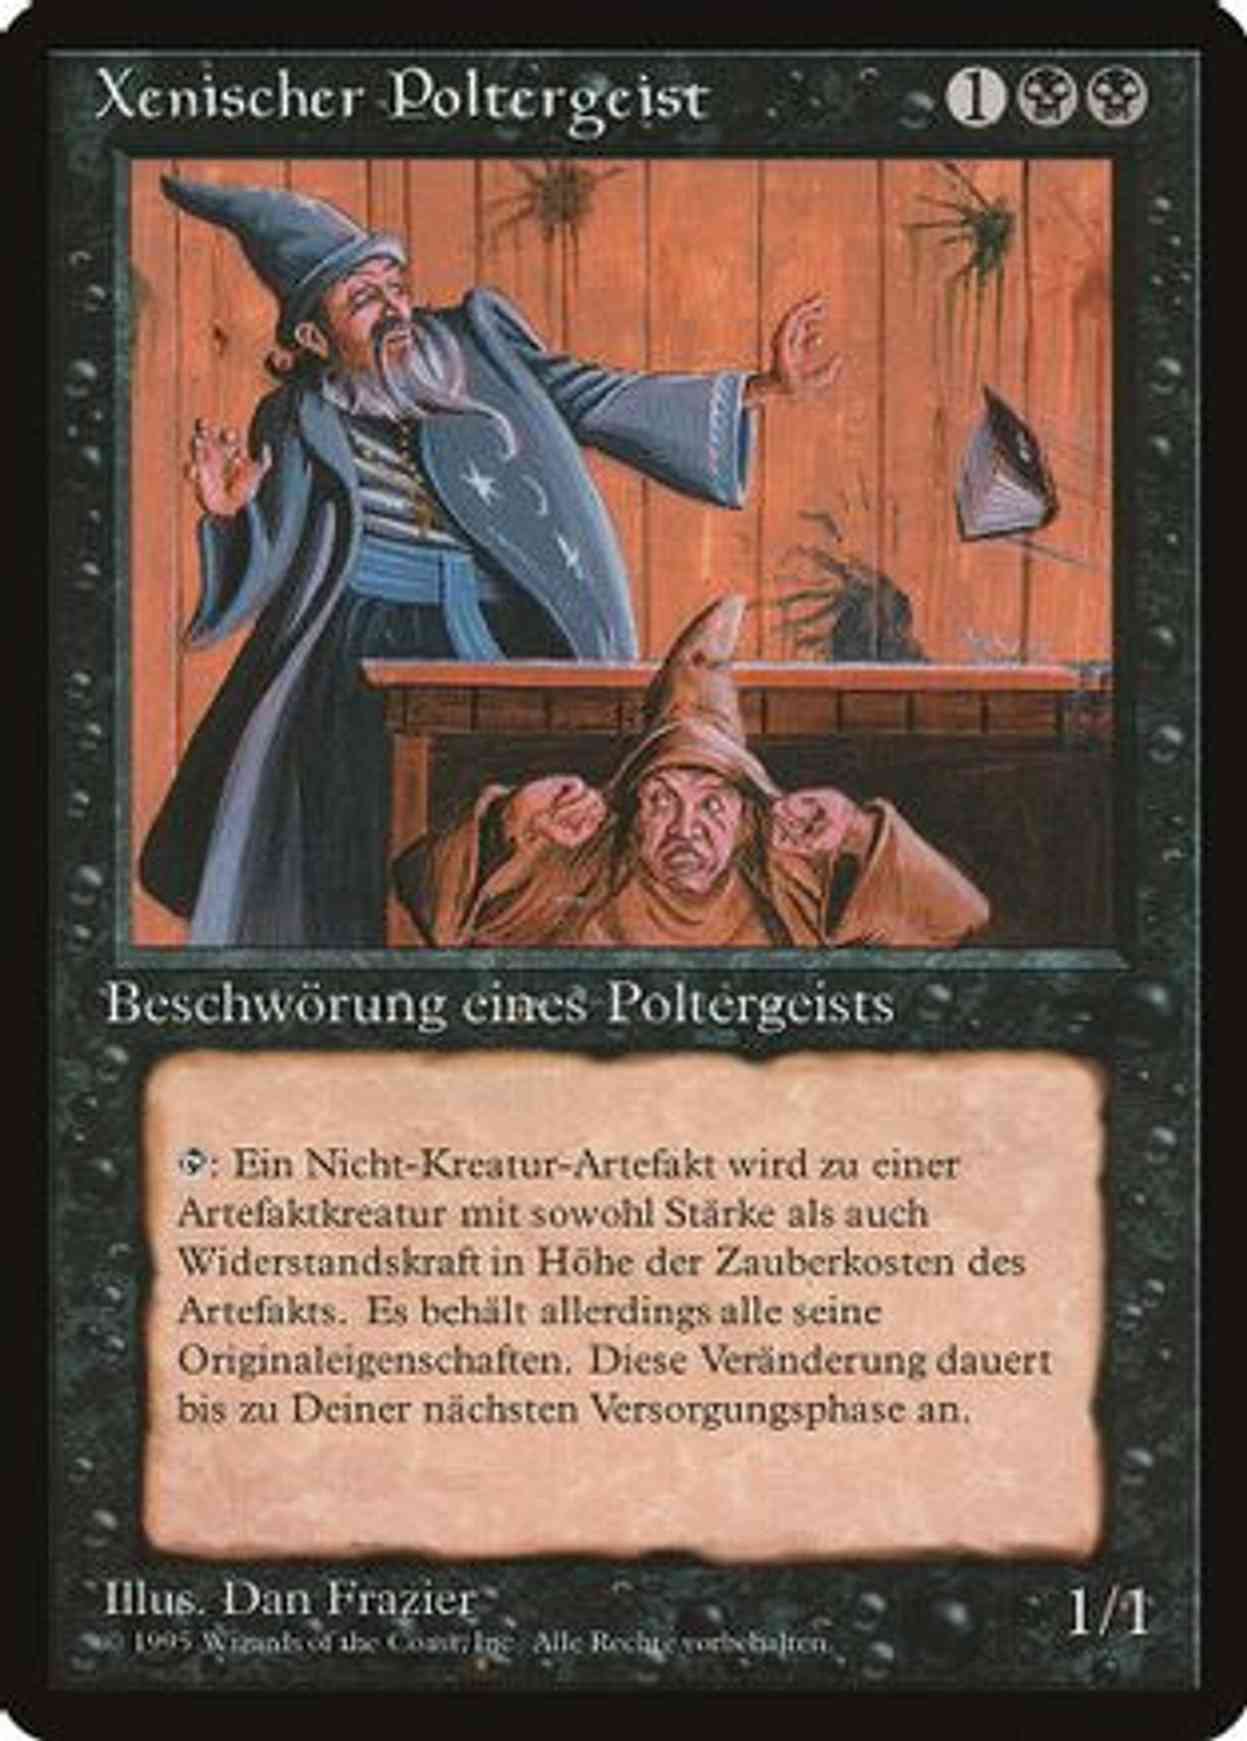 Xenic Poltergeist (German) - "Xenischer Poltergeist" magic card front